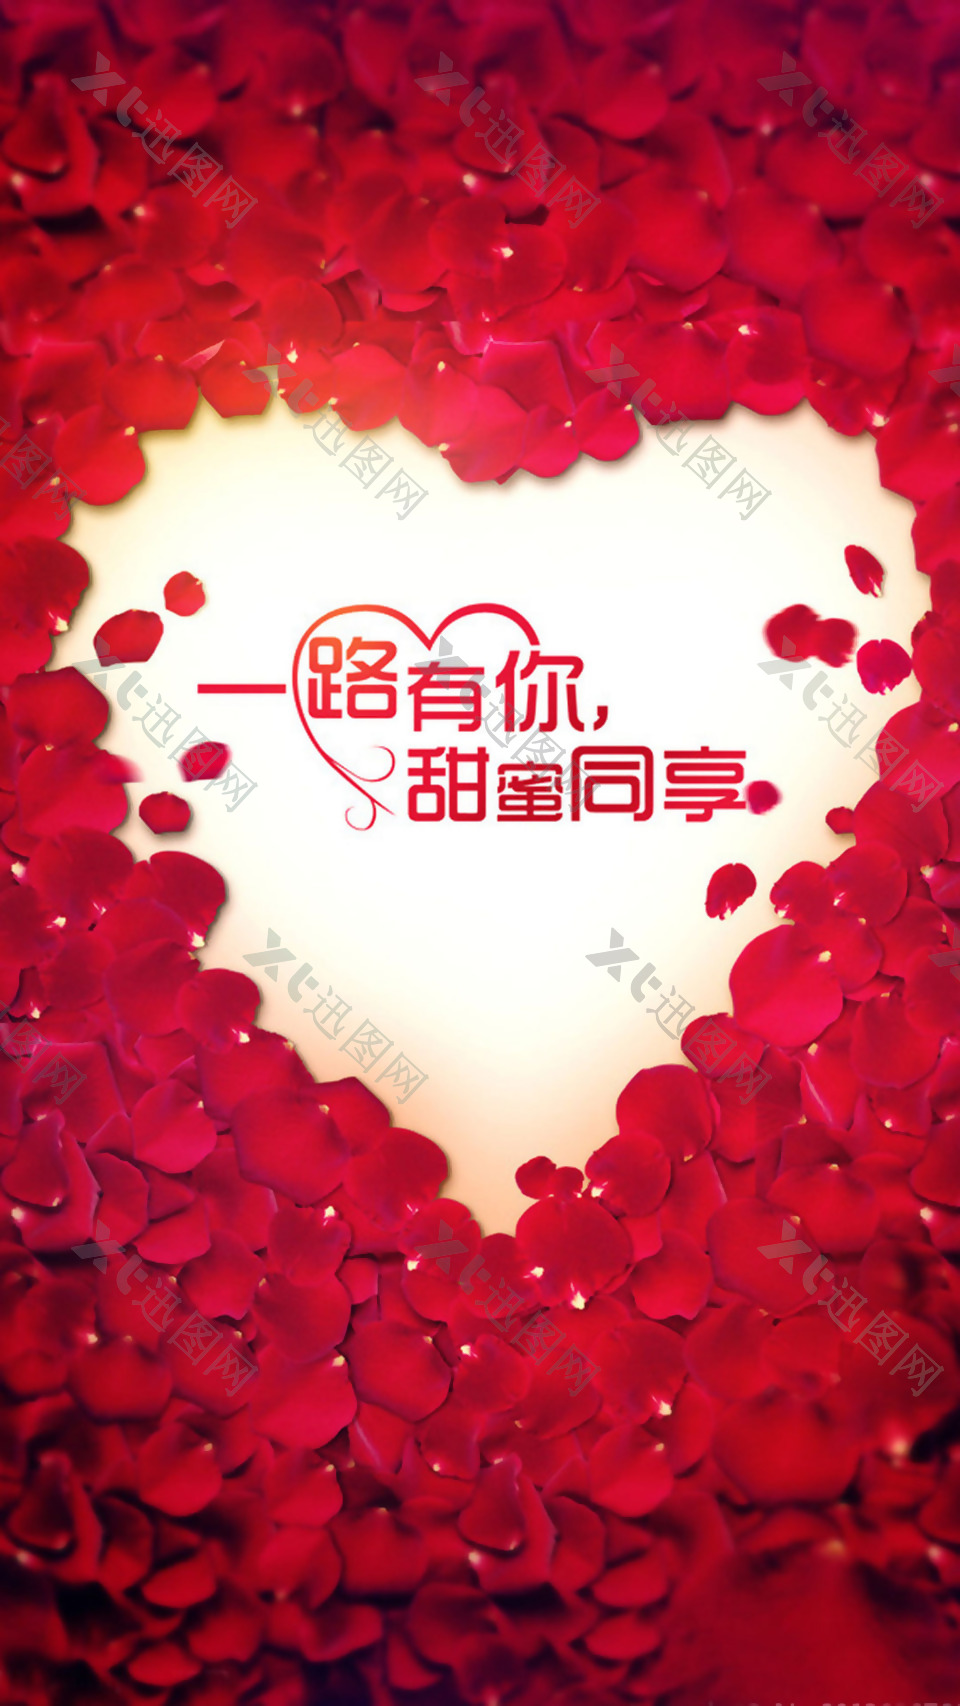 浪漫红色心形花瓣H5背景素材